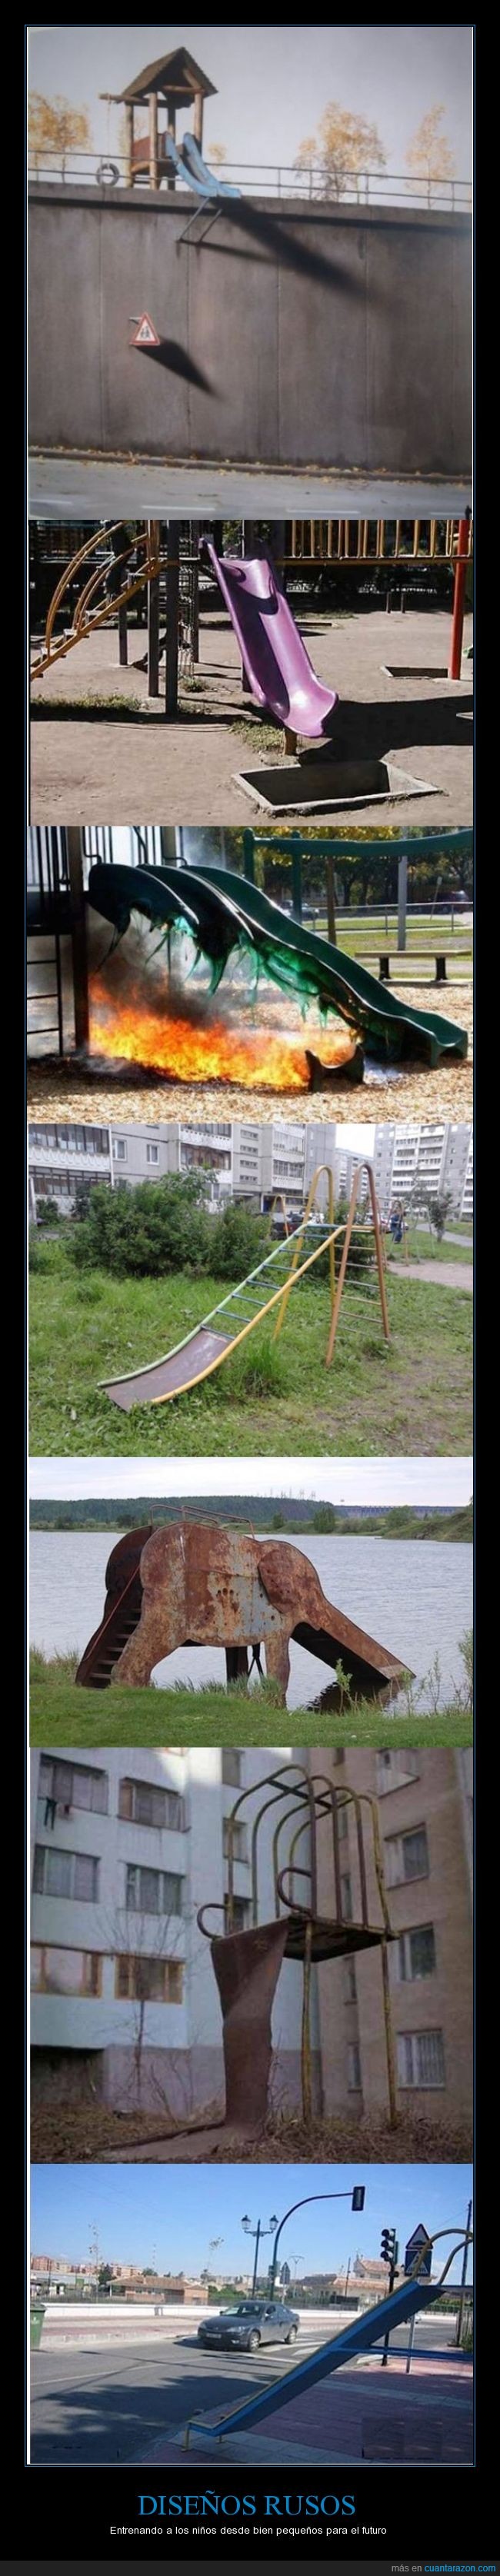 rusos,improvisar,violencia,peligro,no pasa nada,tobogan,caer,parque,juego,jugar